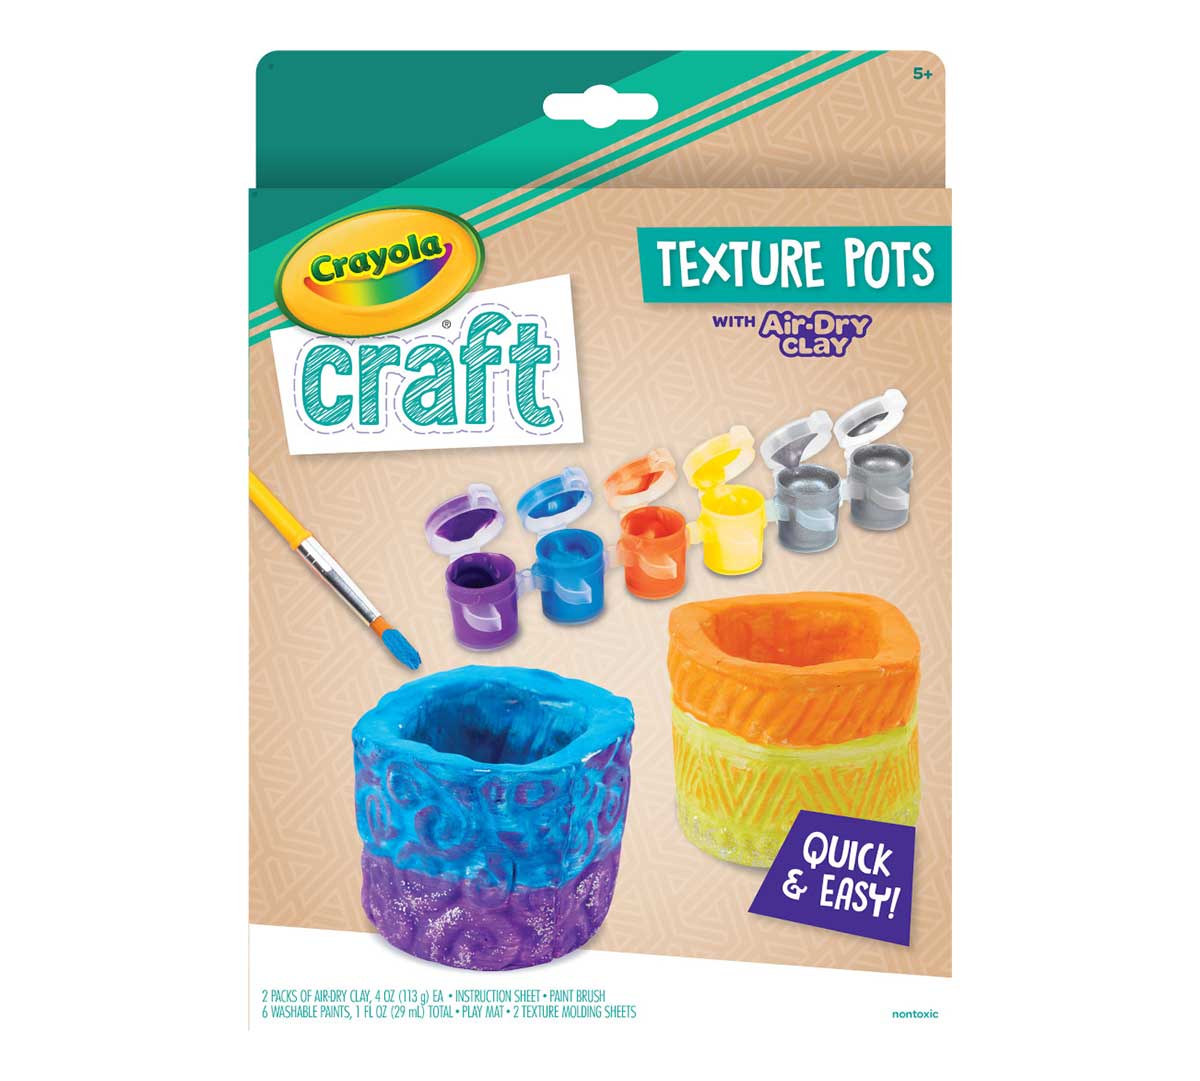 Crayola Air-Dry Clay - Art, Classroom, Art Room - 1 Each - Blue